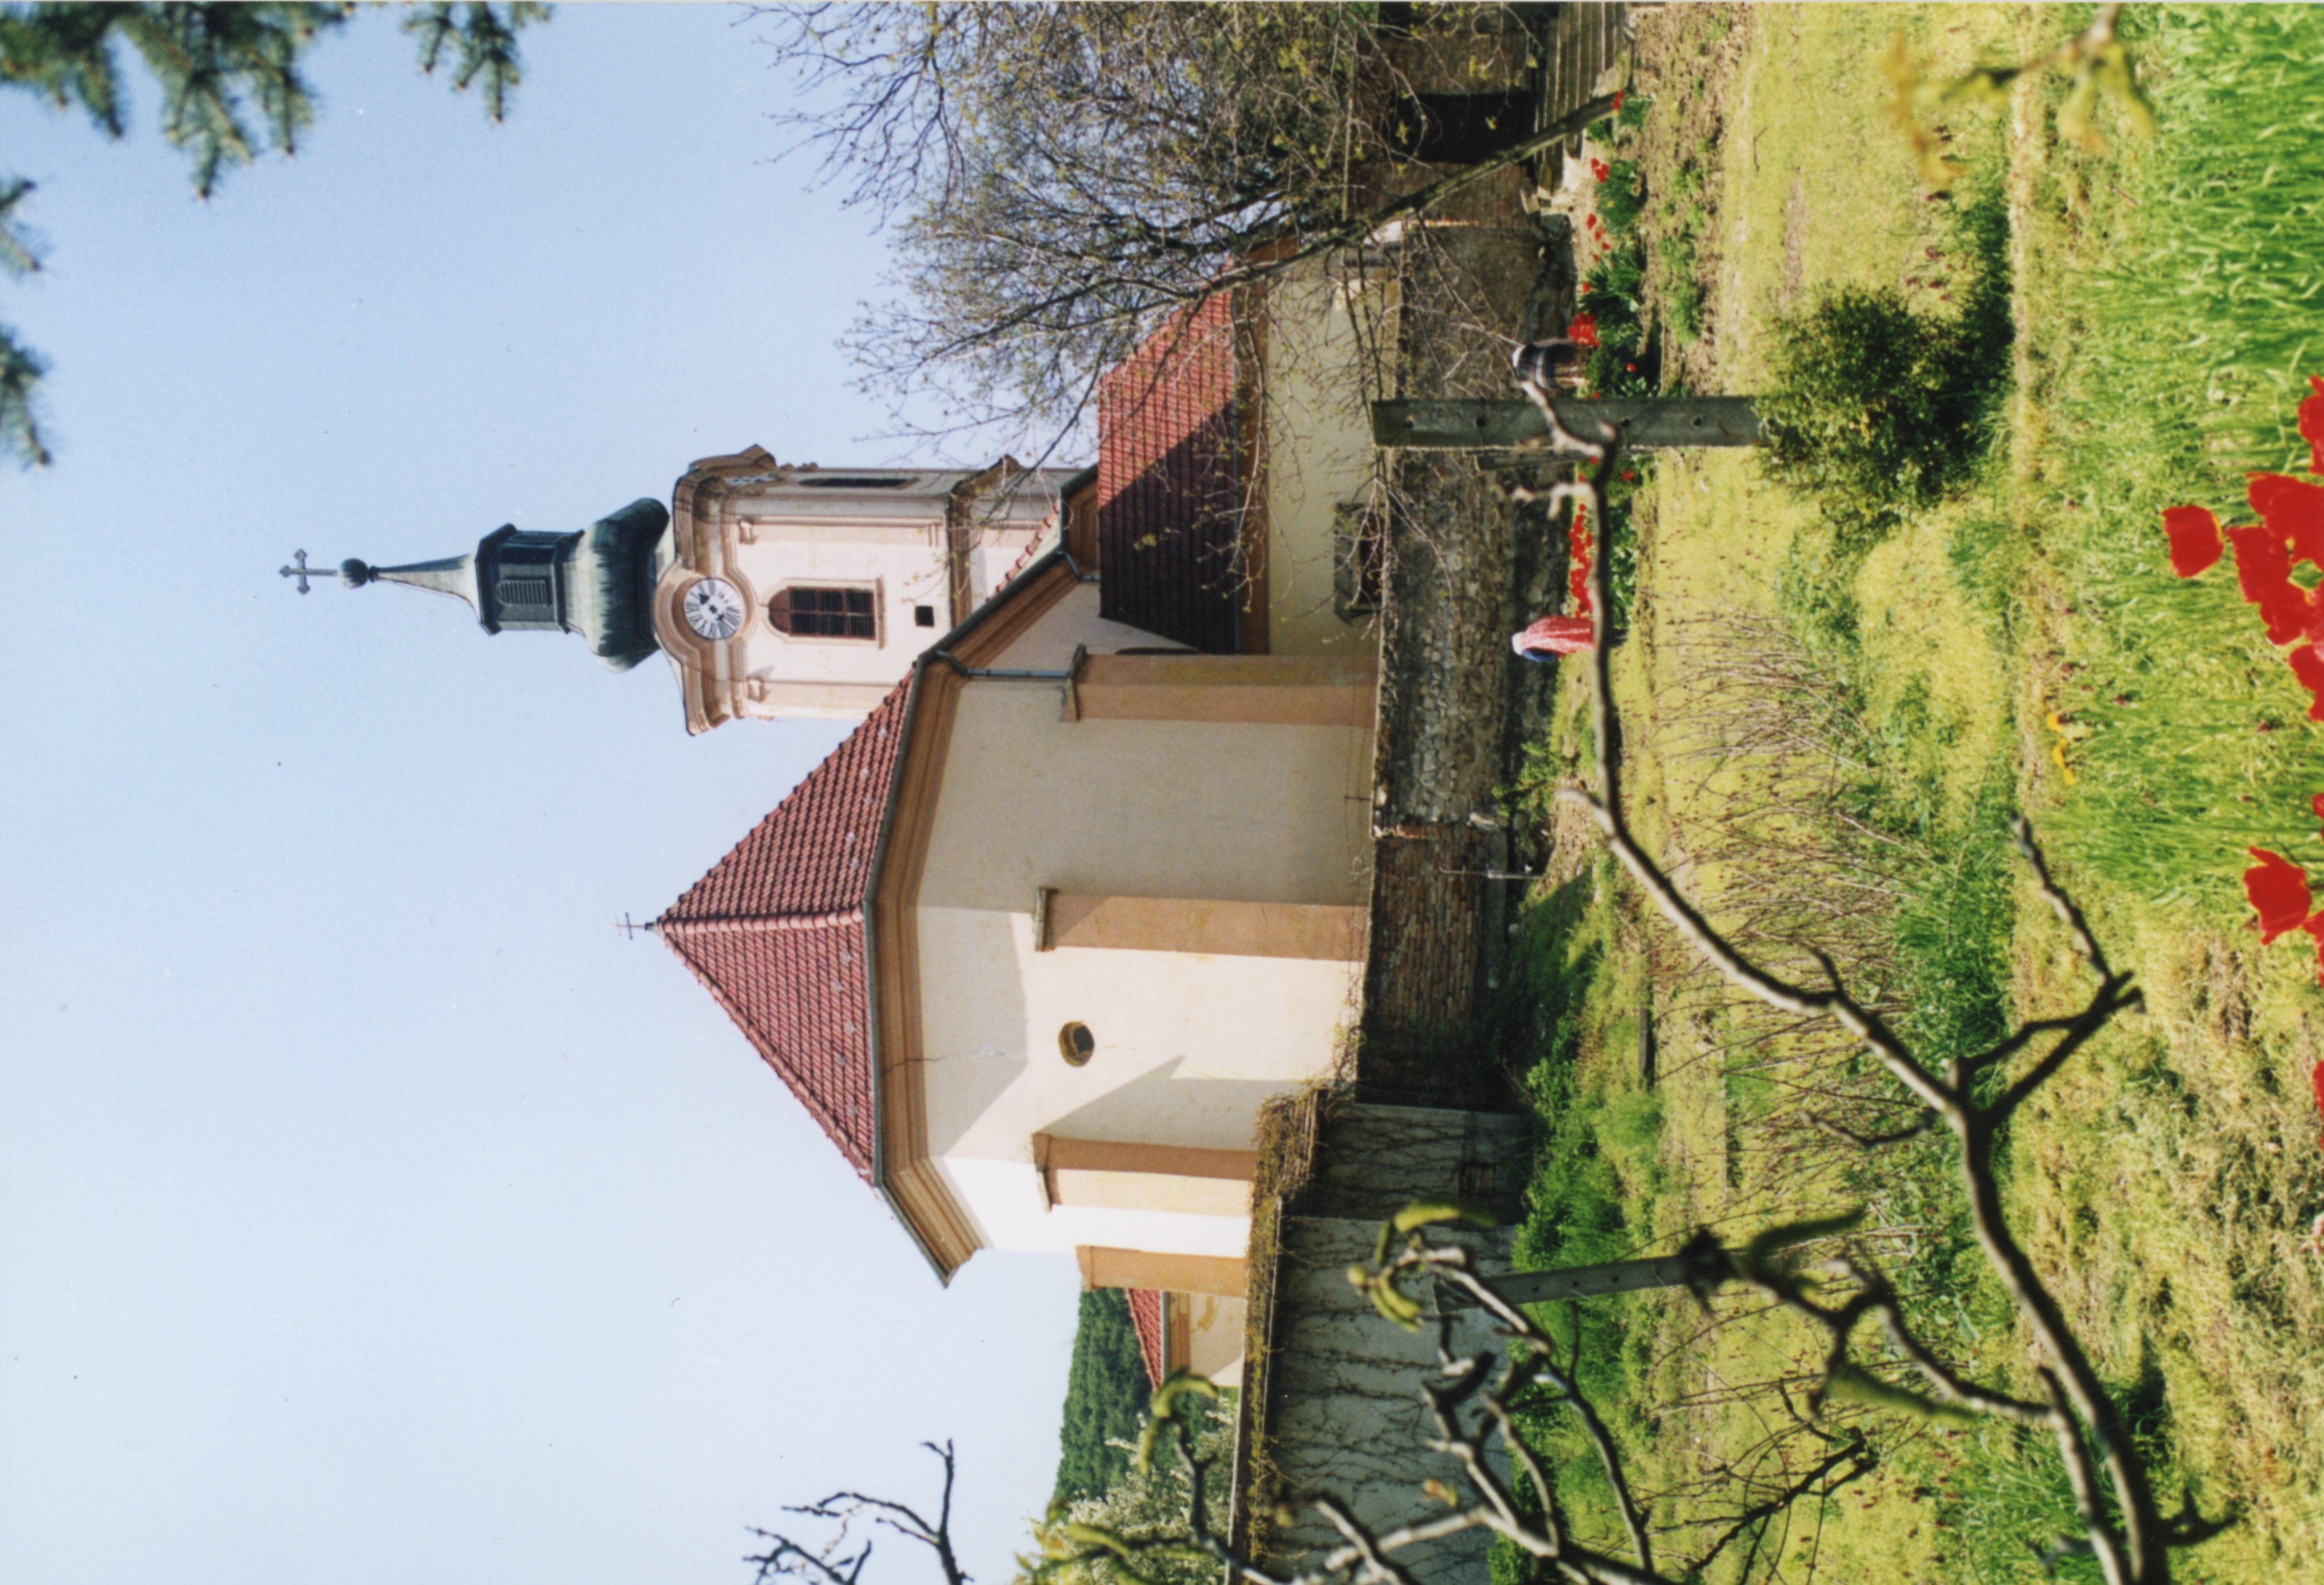 Szent Mihály templom (Magyar Földrajzi Múzeum CC BY-NC-SA)